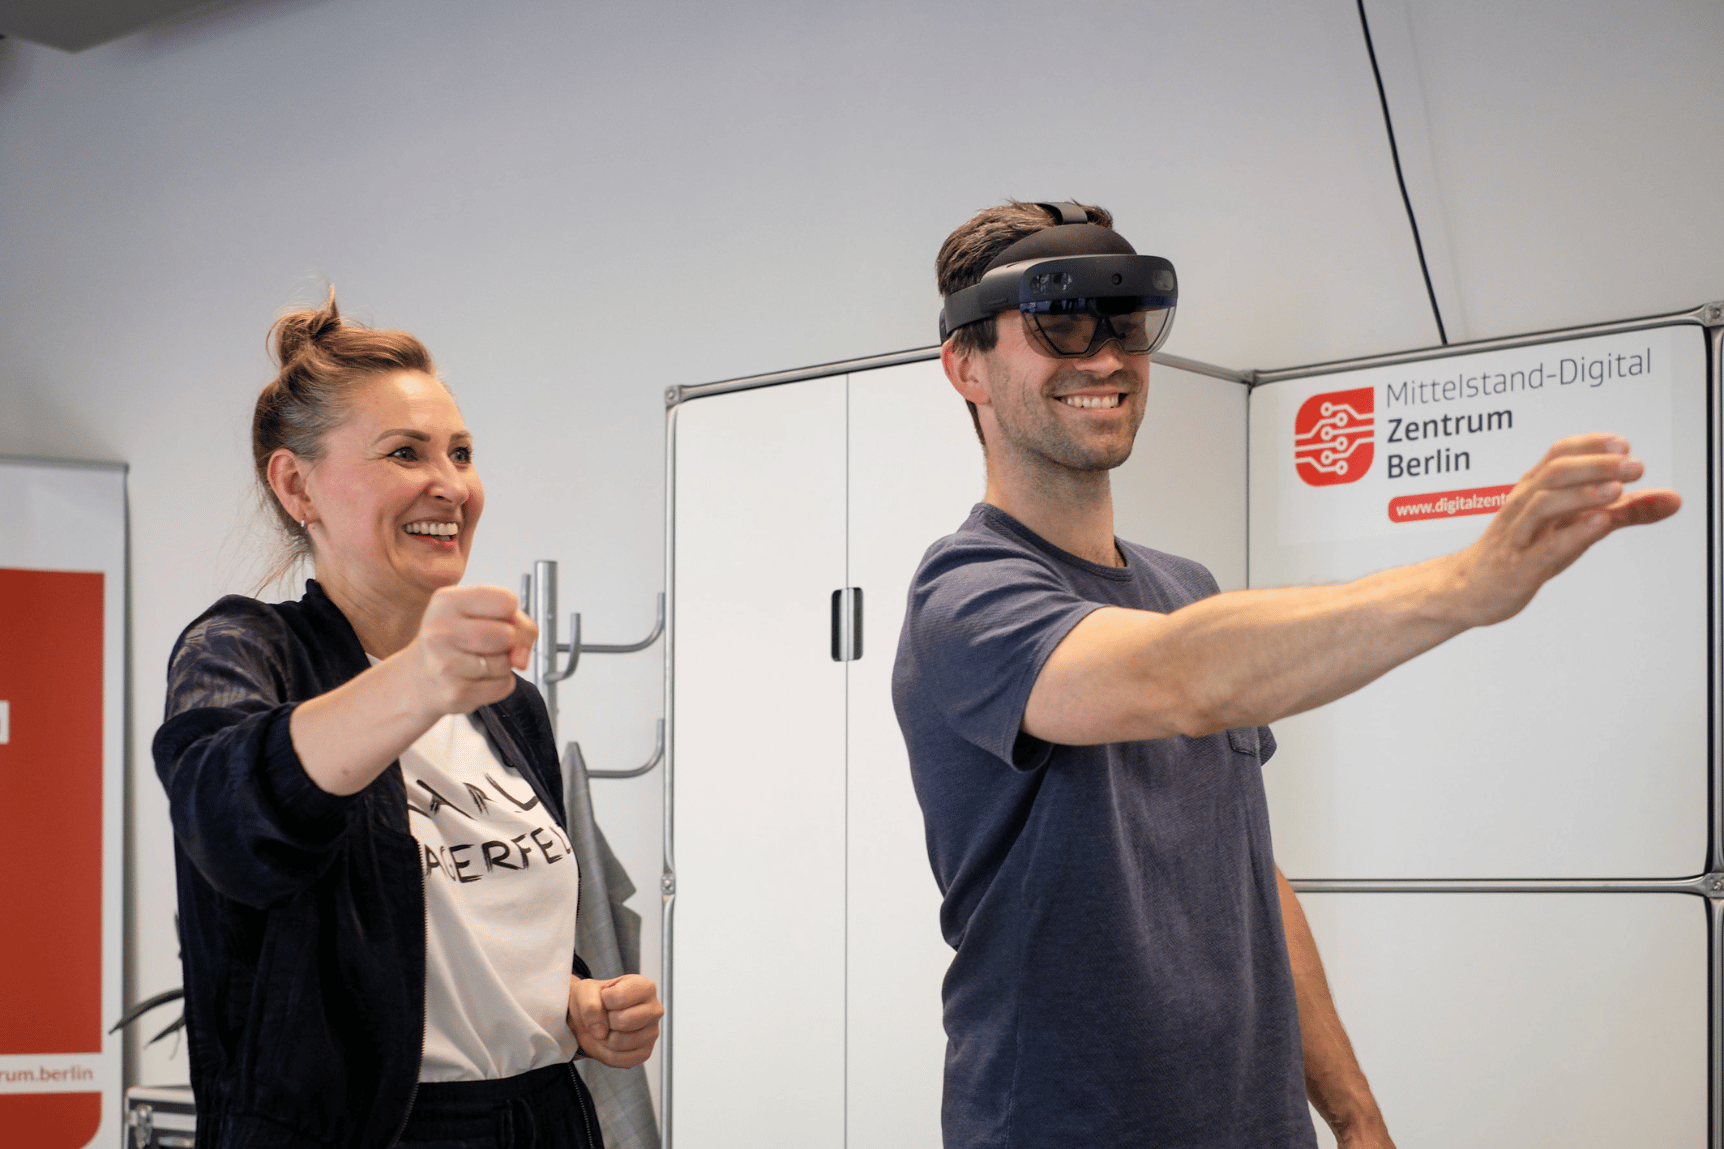 Ein Mann trägt einer VR-Brille und streck seinen rechten Arm aus, links neben ihm eine Frau ohne VR-Brille, die die gleiche Bewegung macht